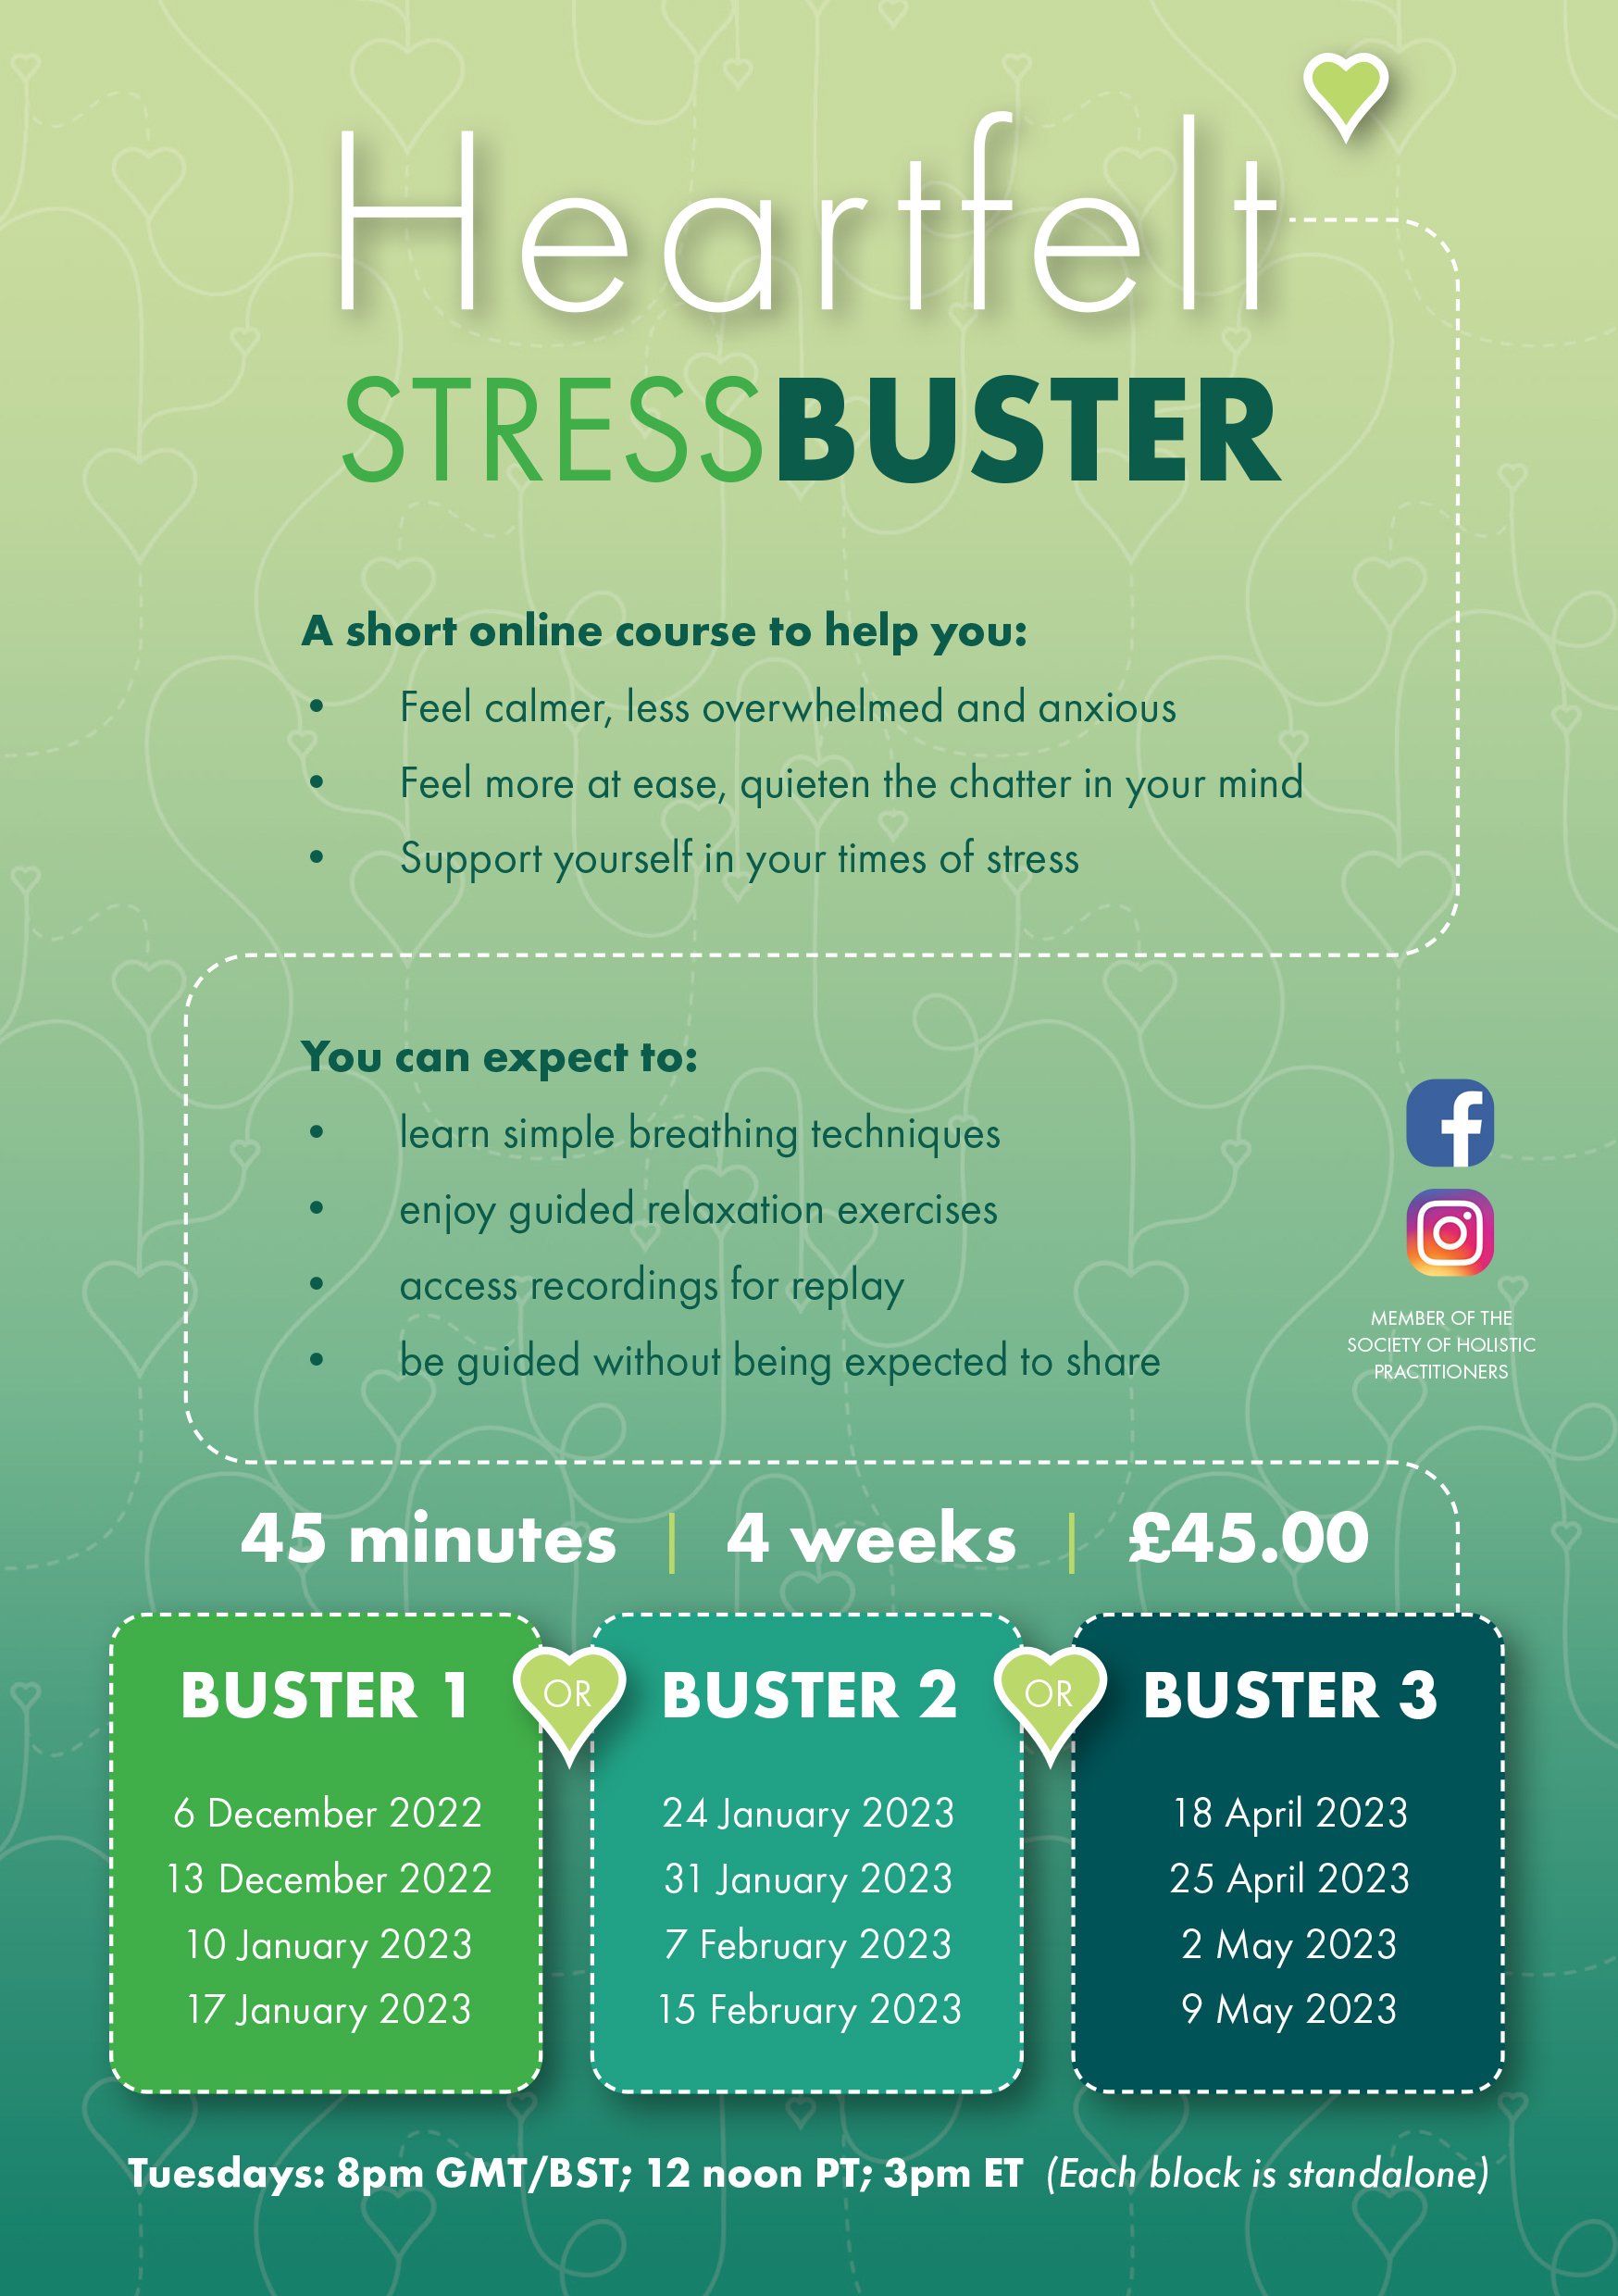 Stressbuster Leaflet-1 - Emma Grant.jpg